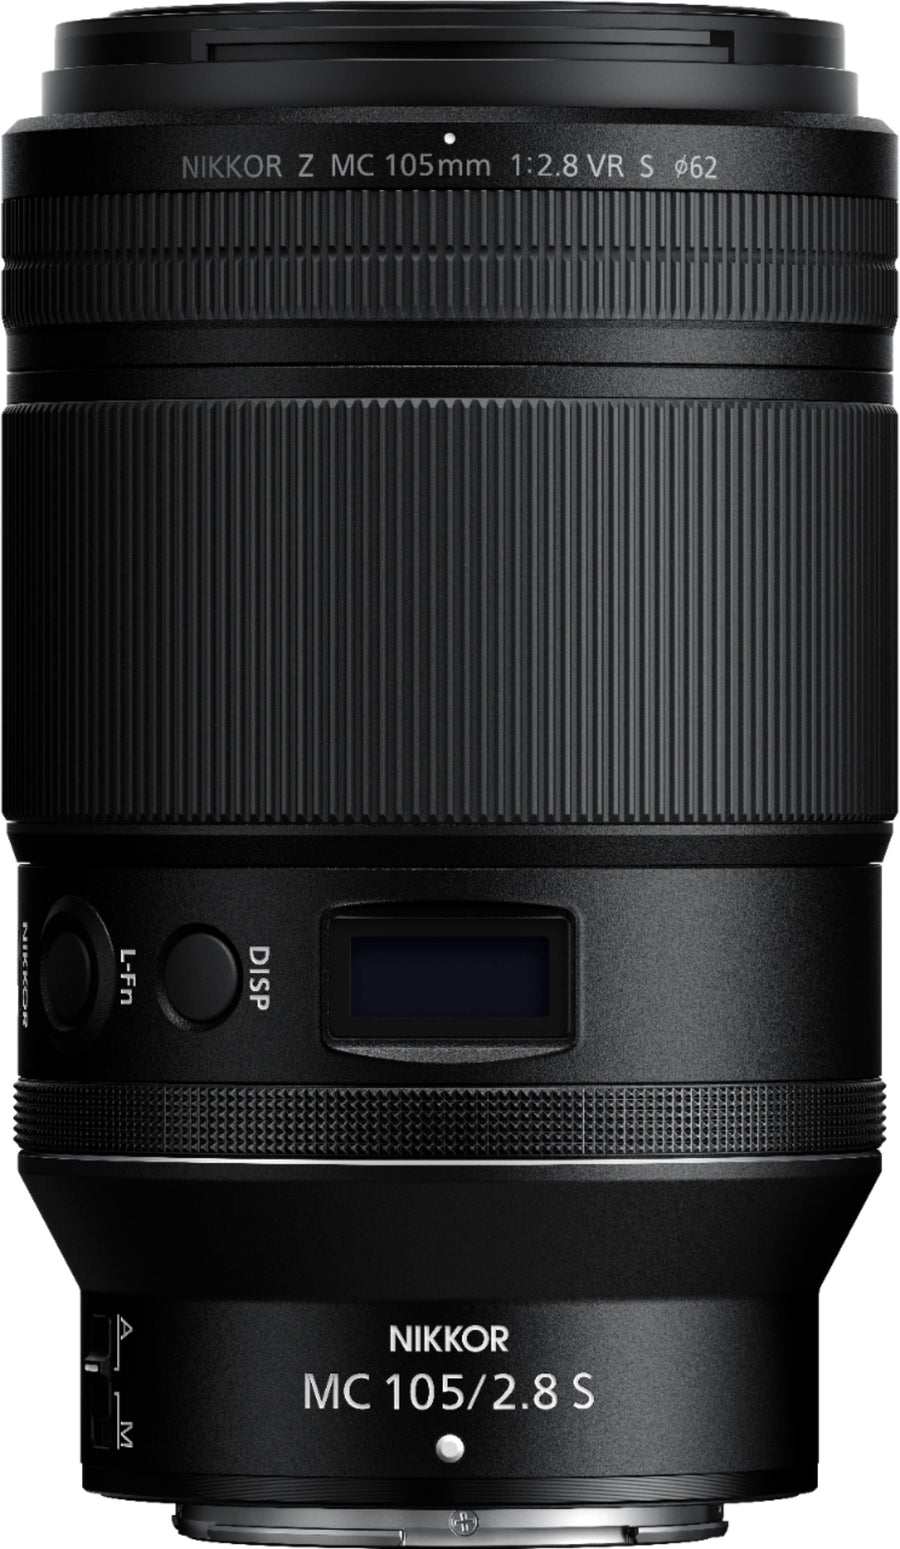 Nikon - NIKKOR Z MC 105mm f/2.8 VR S Macro Lens for Z Series Mirrorless Cameras_0